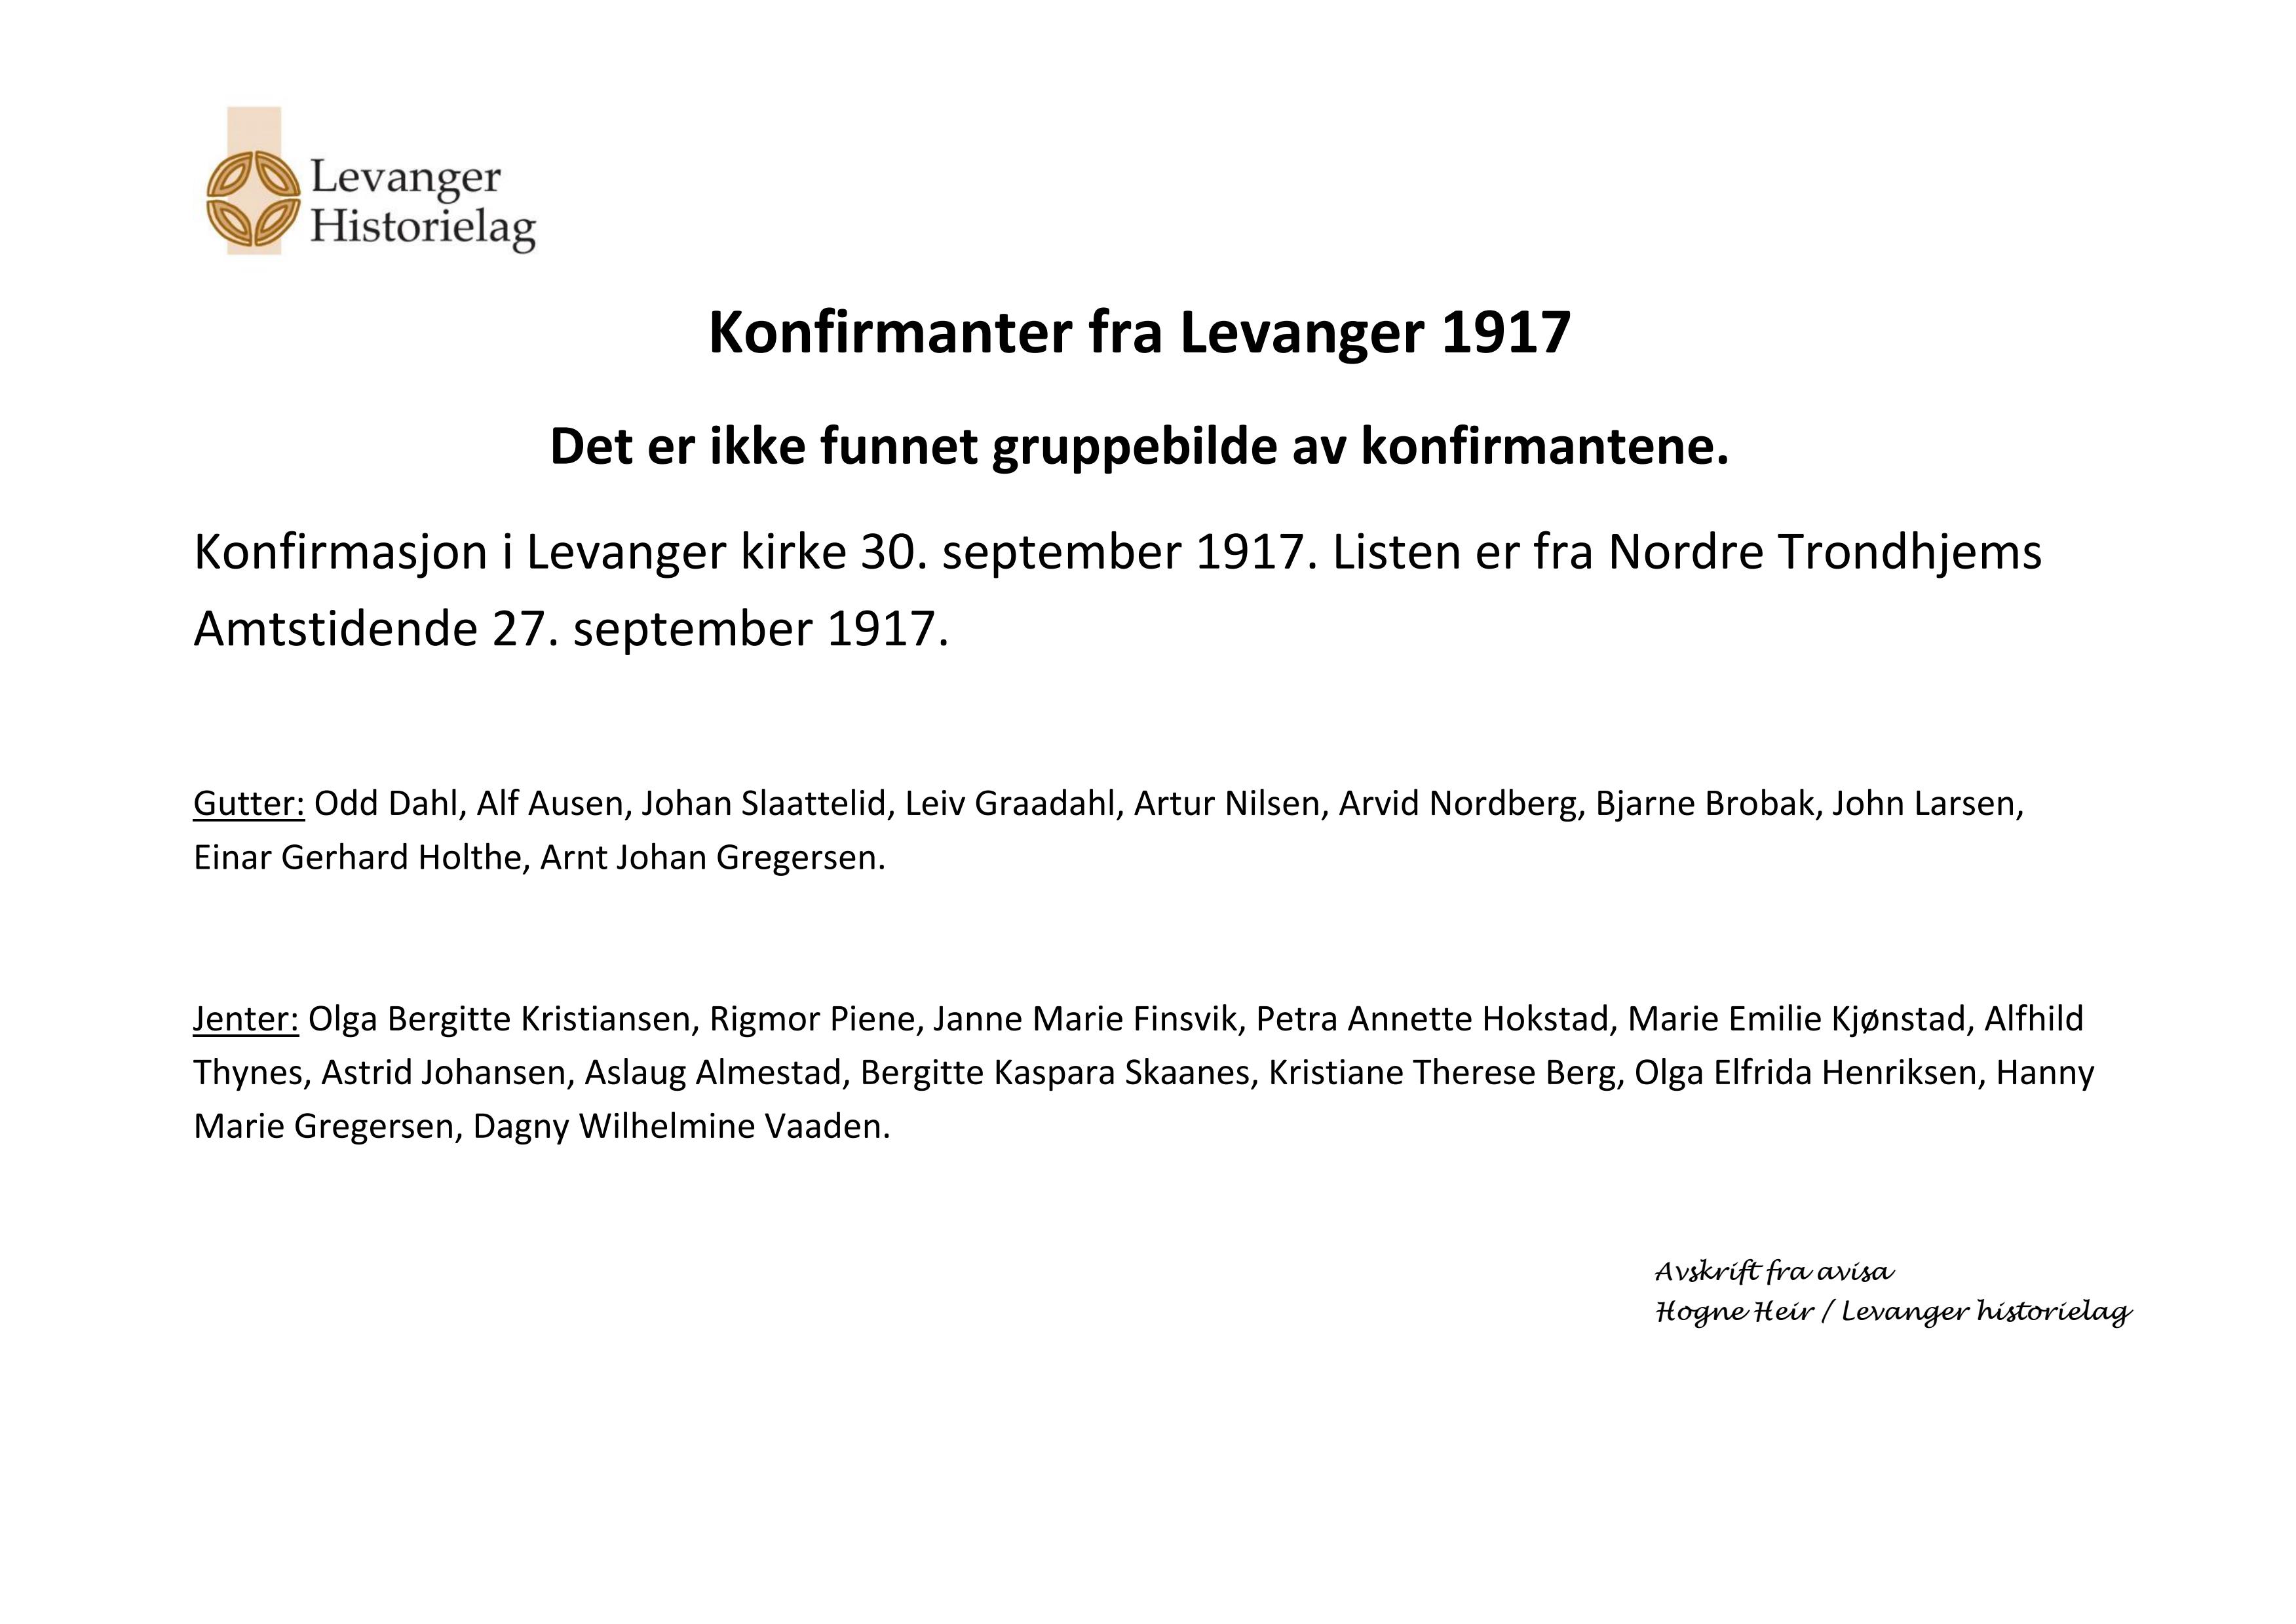 Konfirmanter fra Levanger i Levanger kirke 30. september 1917 - navneliste